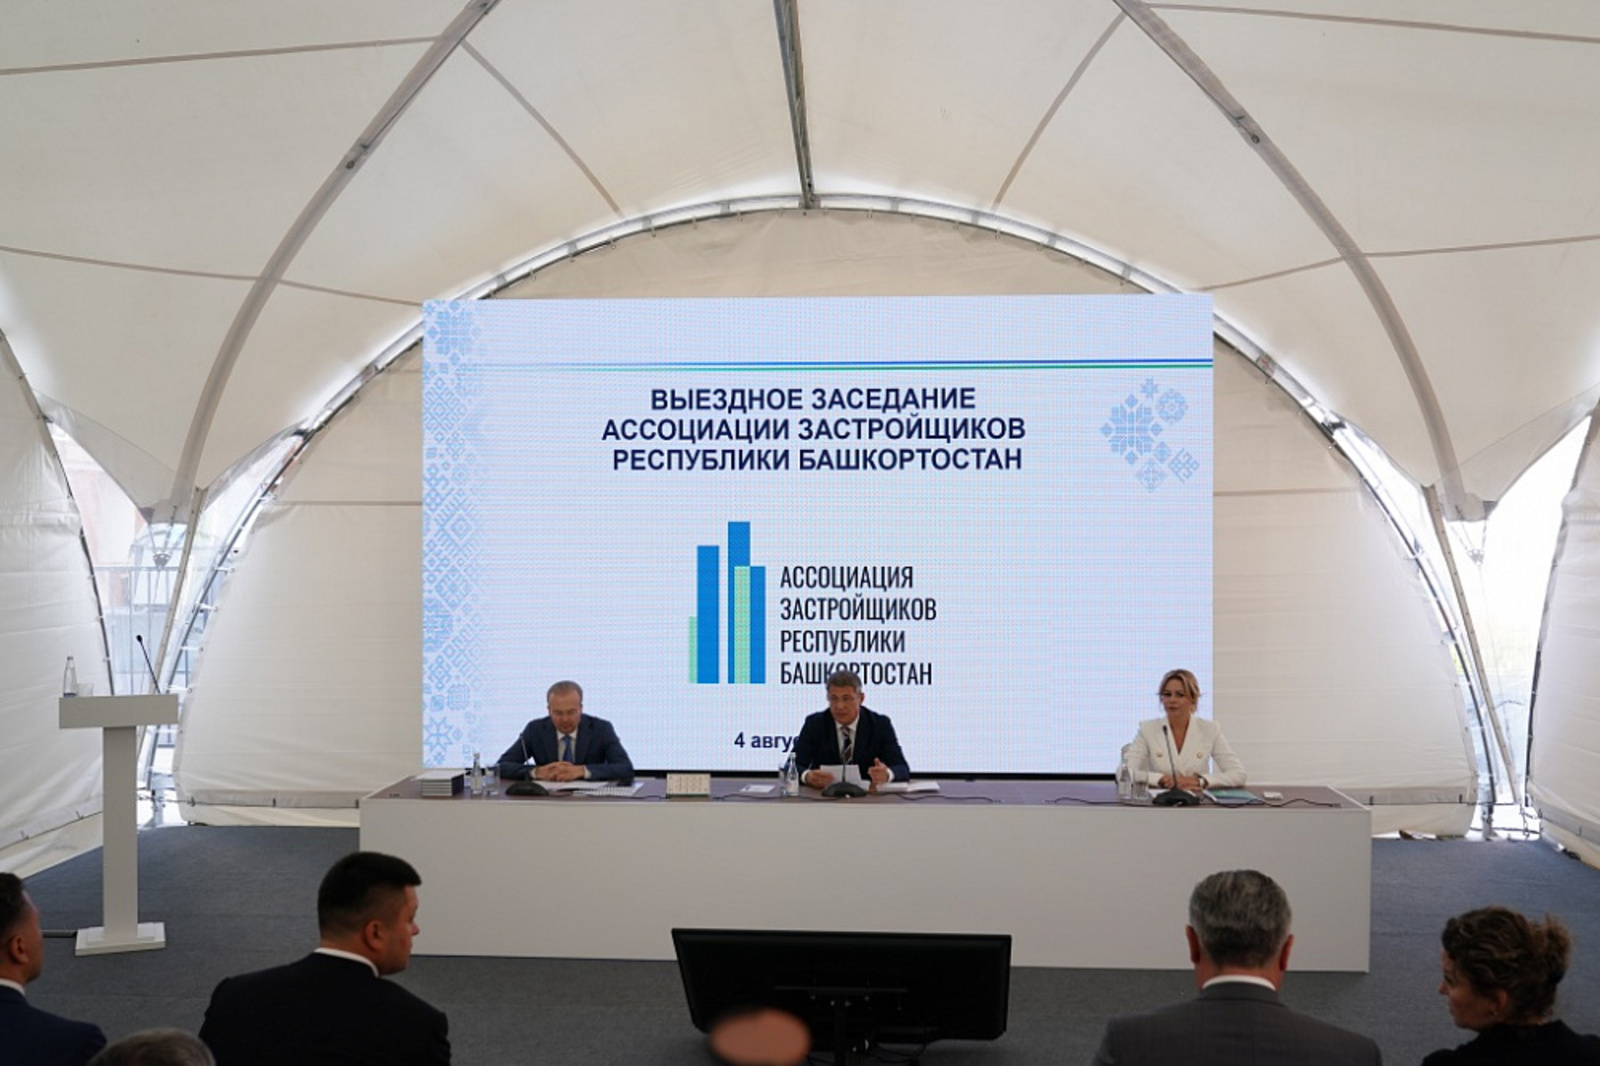 Радий Хабиров провёл выездное заседание Ассоциации застройщиков Башкортостана